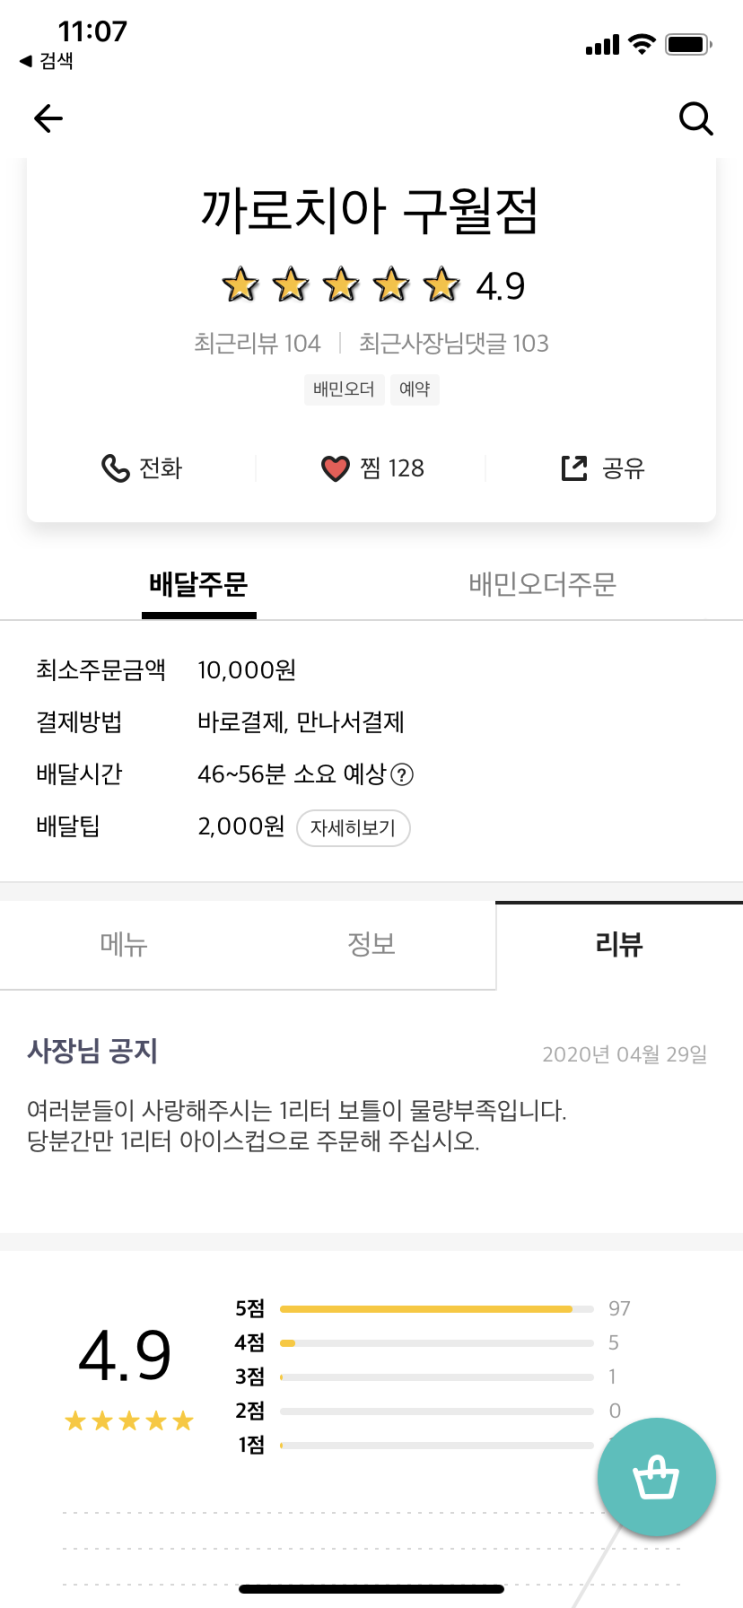 배달의 민족 리뷰수 100+ 돌파! - 까로치아 구월점